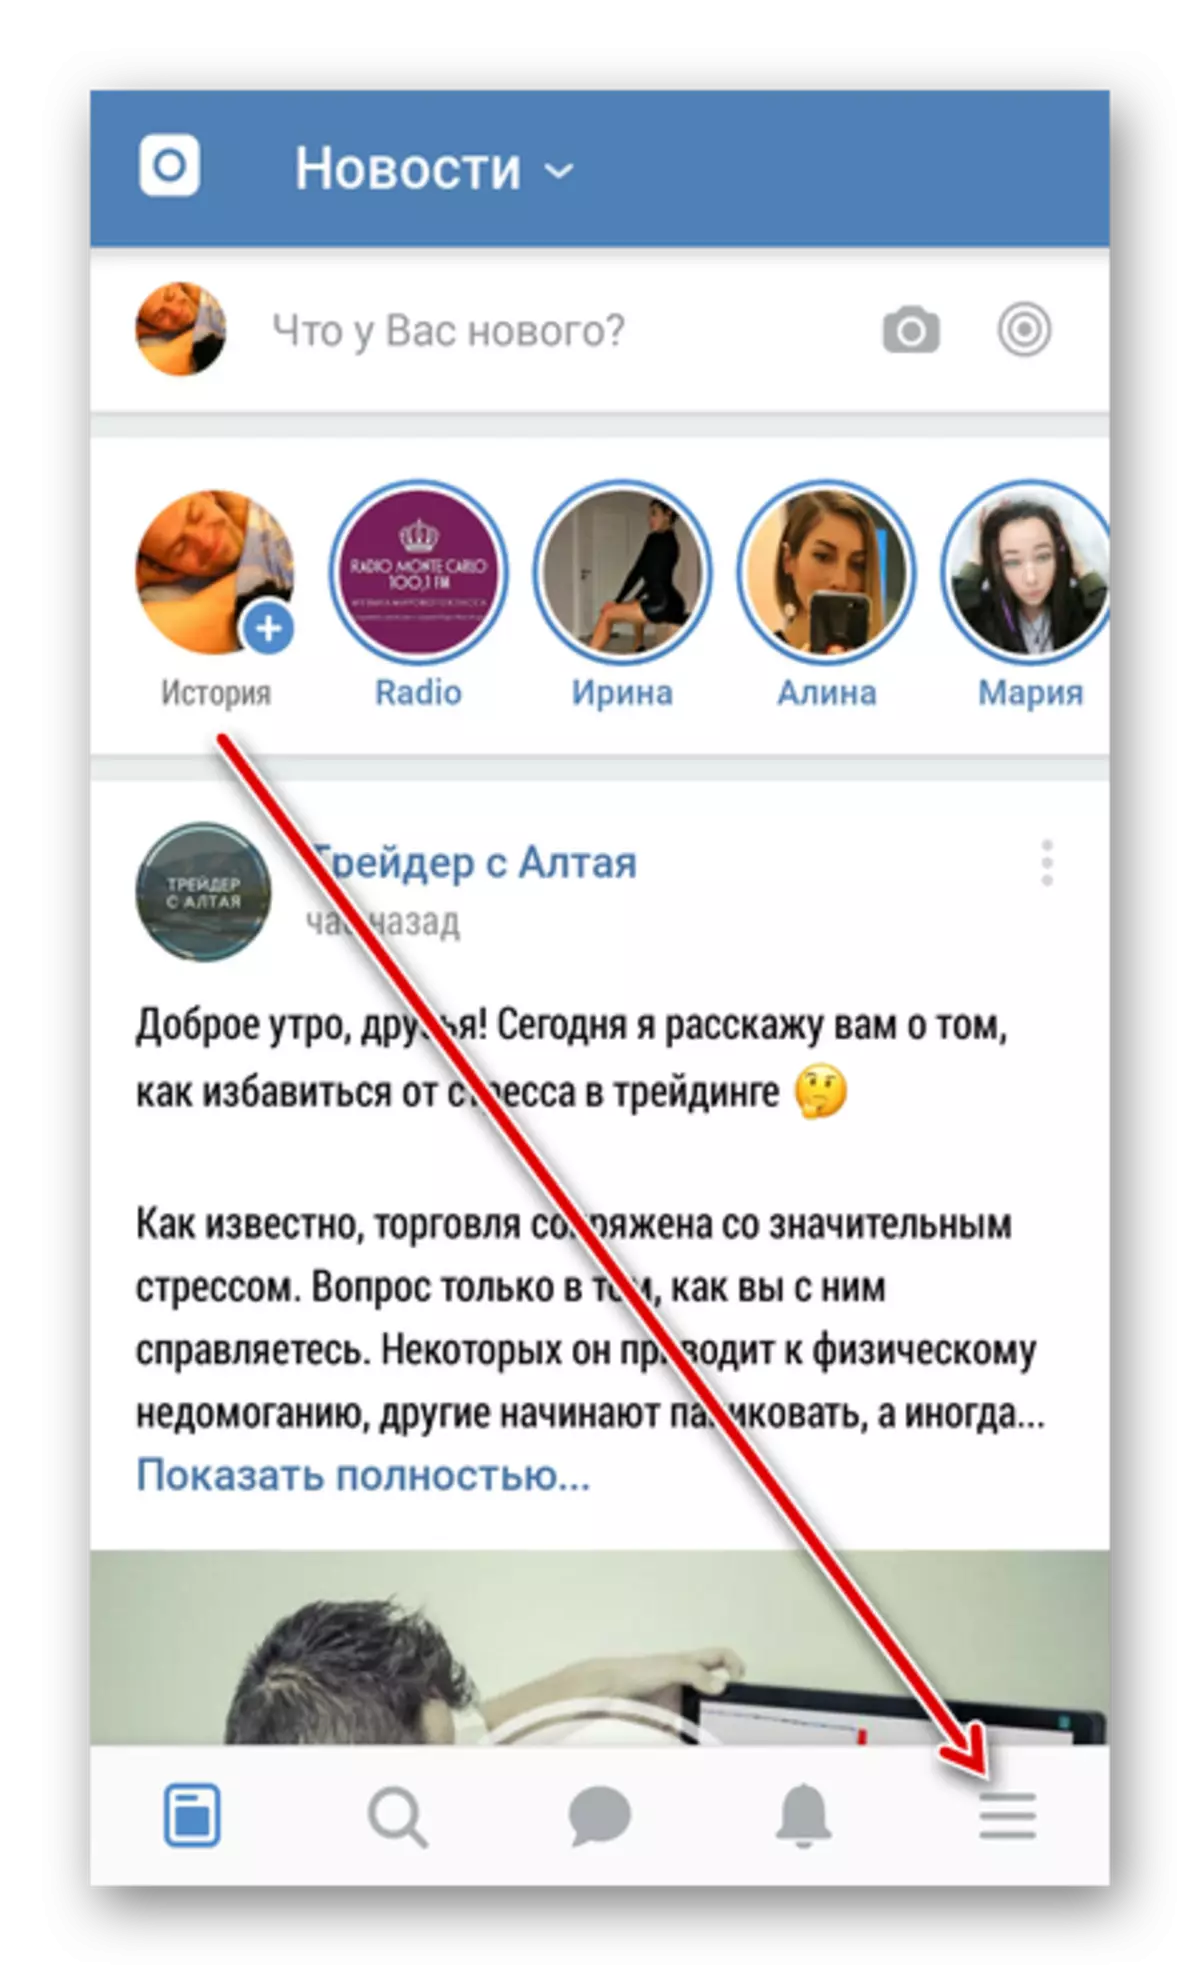 Vkontakte යෙදුමට පිවිසෙන්න